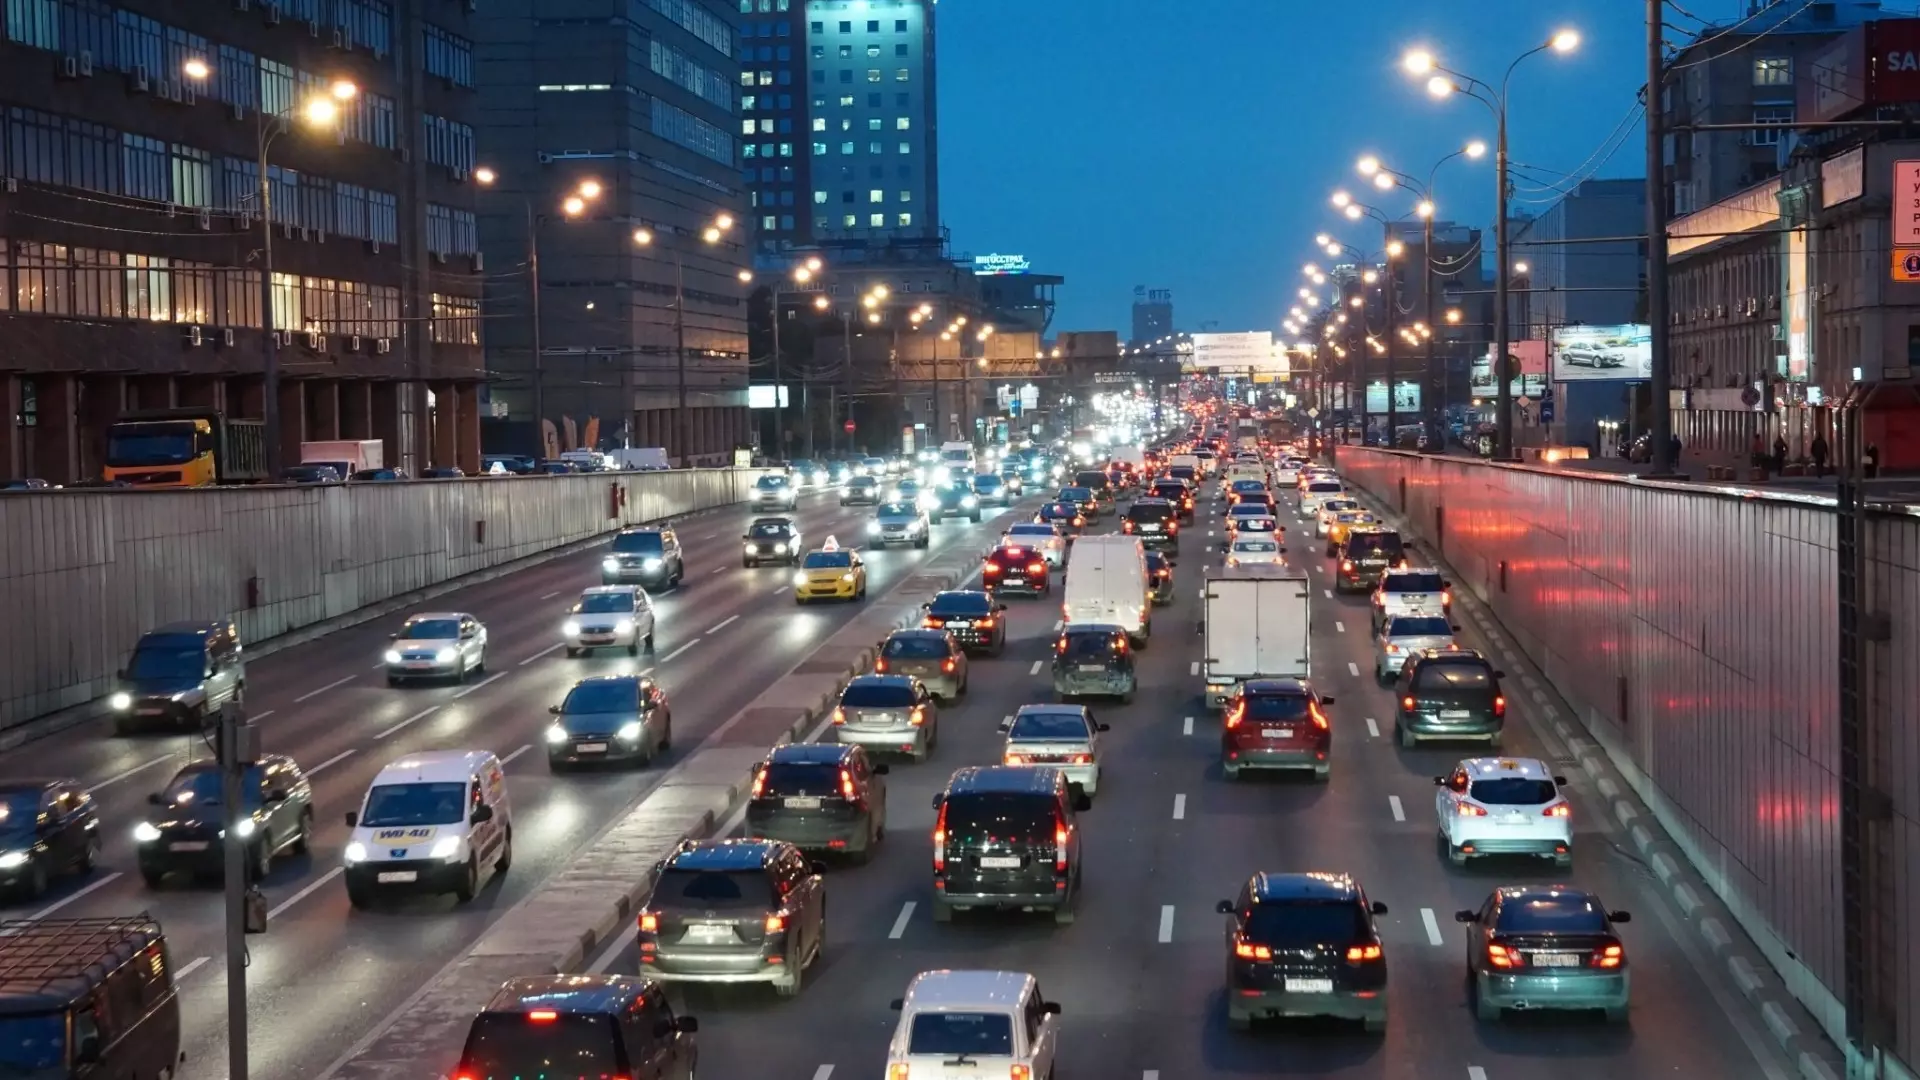 Автомобиль как роскошь: почему москвичи пересаживаются на общественный транспорт